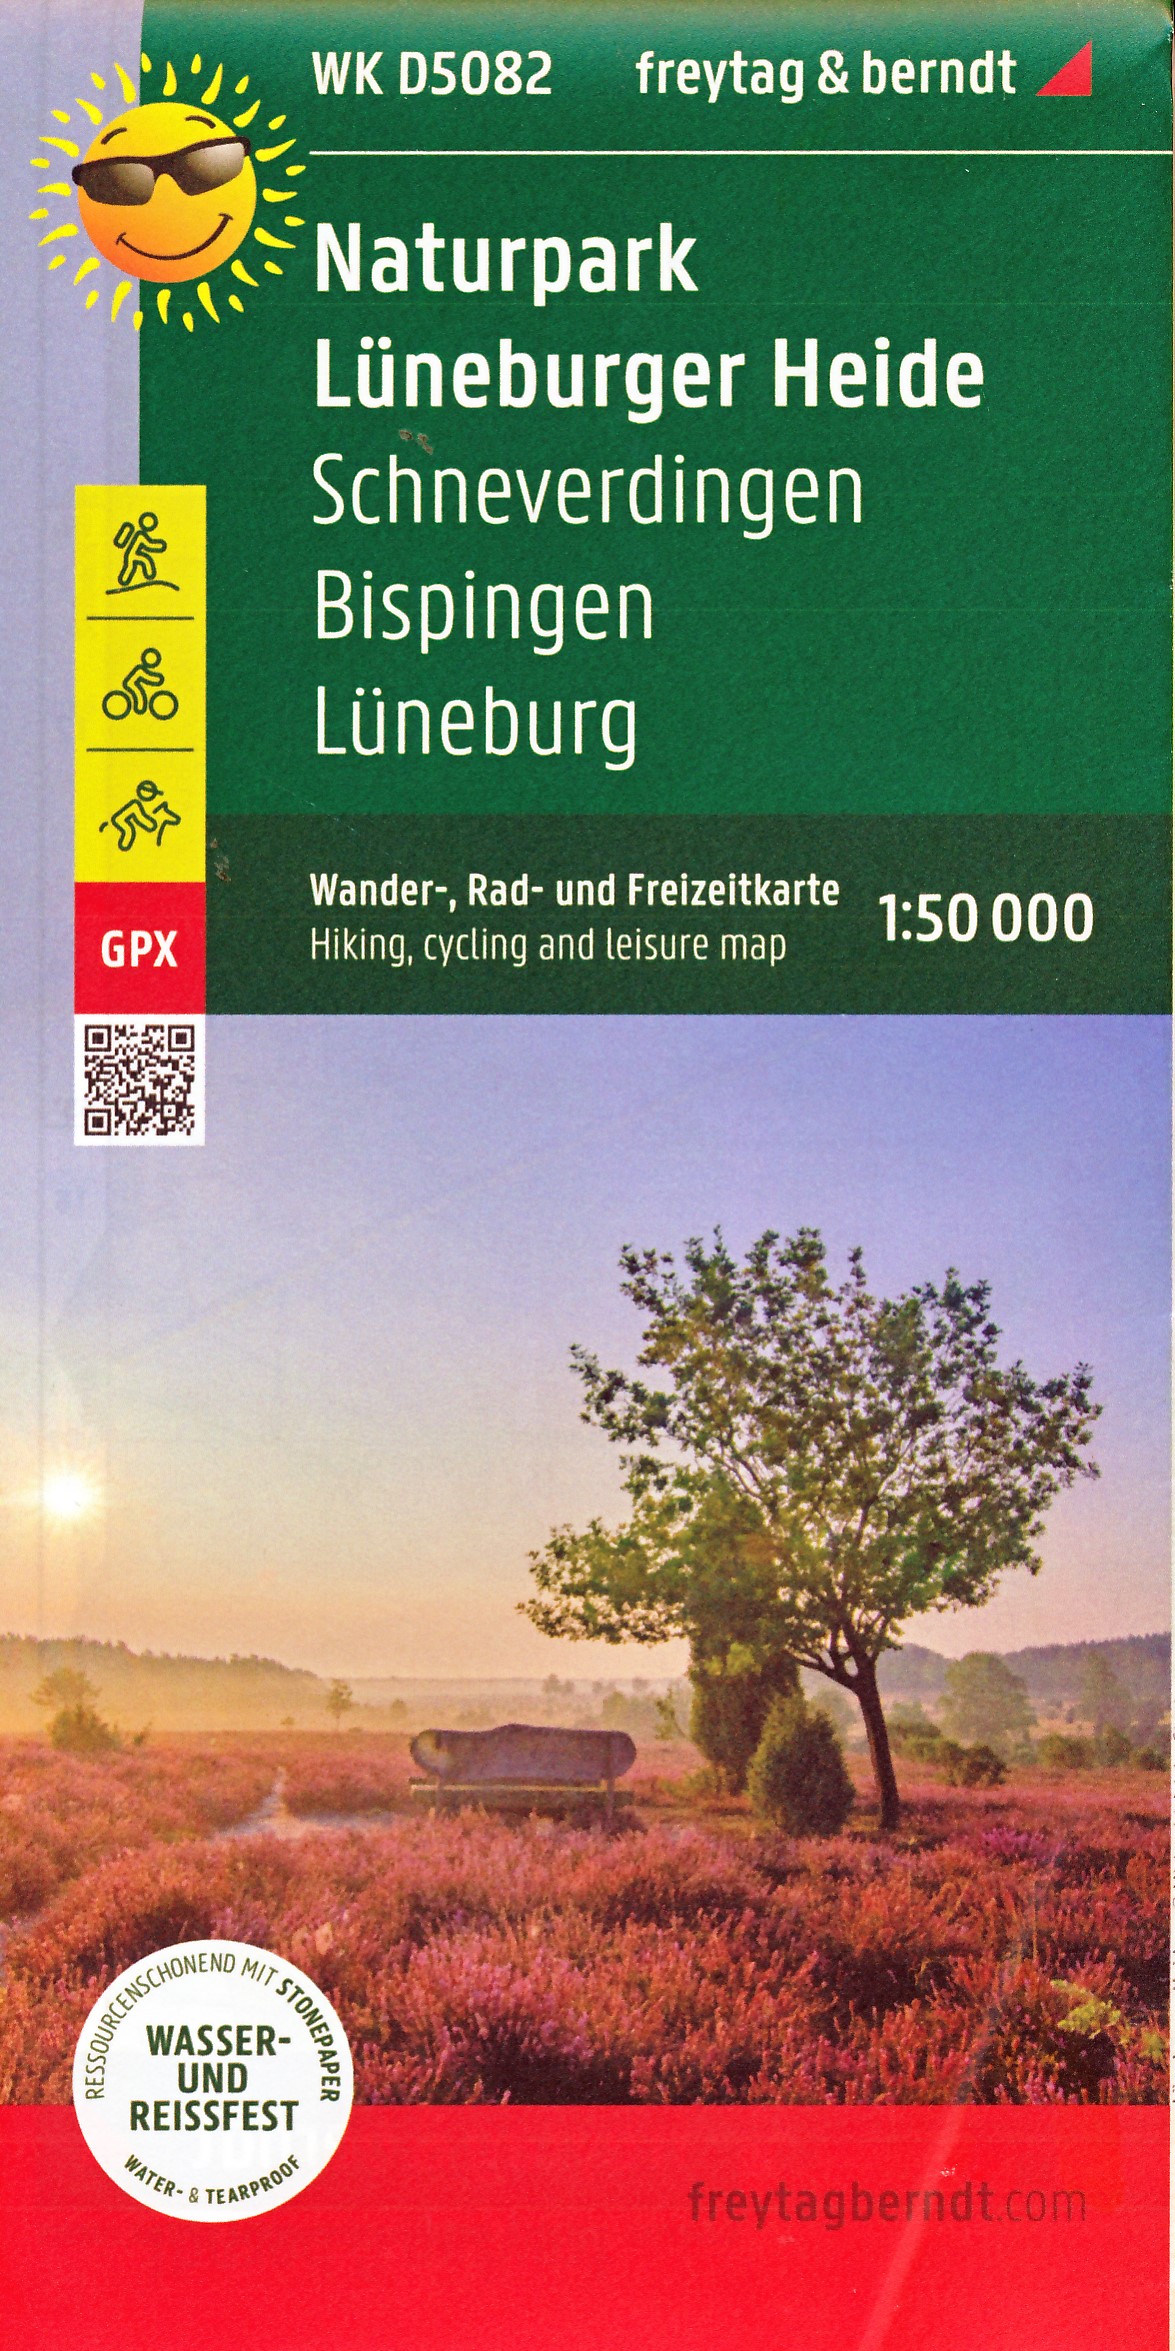 Online bestellen: Wandelkaart - Fietskaart WKD5082 Naturpark Lüneburger Heide | Freytag & Berndt